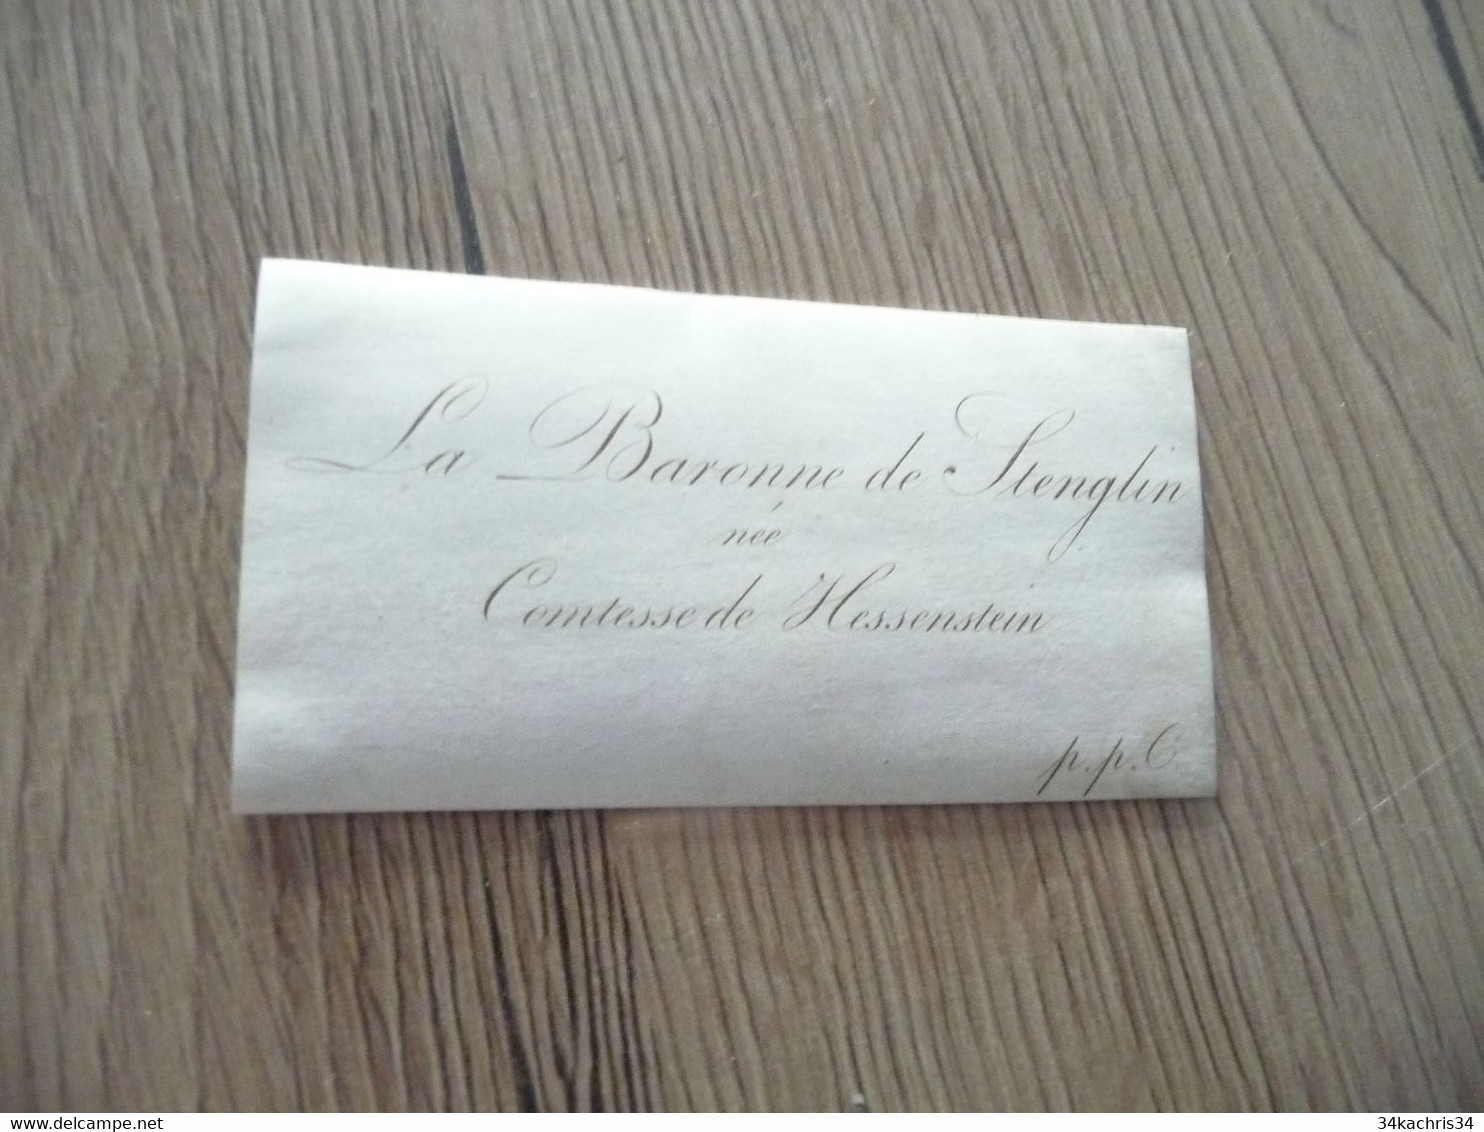 Carte De Visite XIXème Noblesse Royauté La Baronne De Stenglin Née Contesse De Hessenstein - Visiting Cards